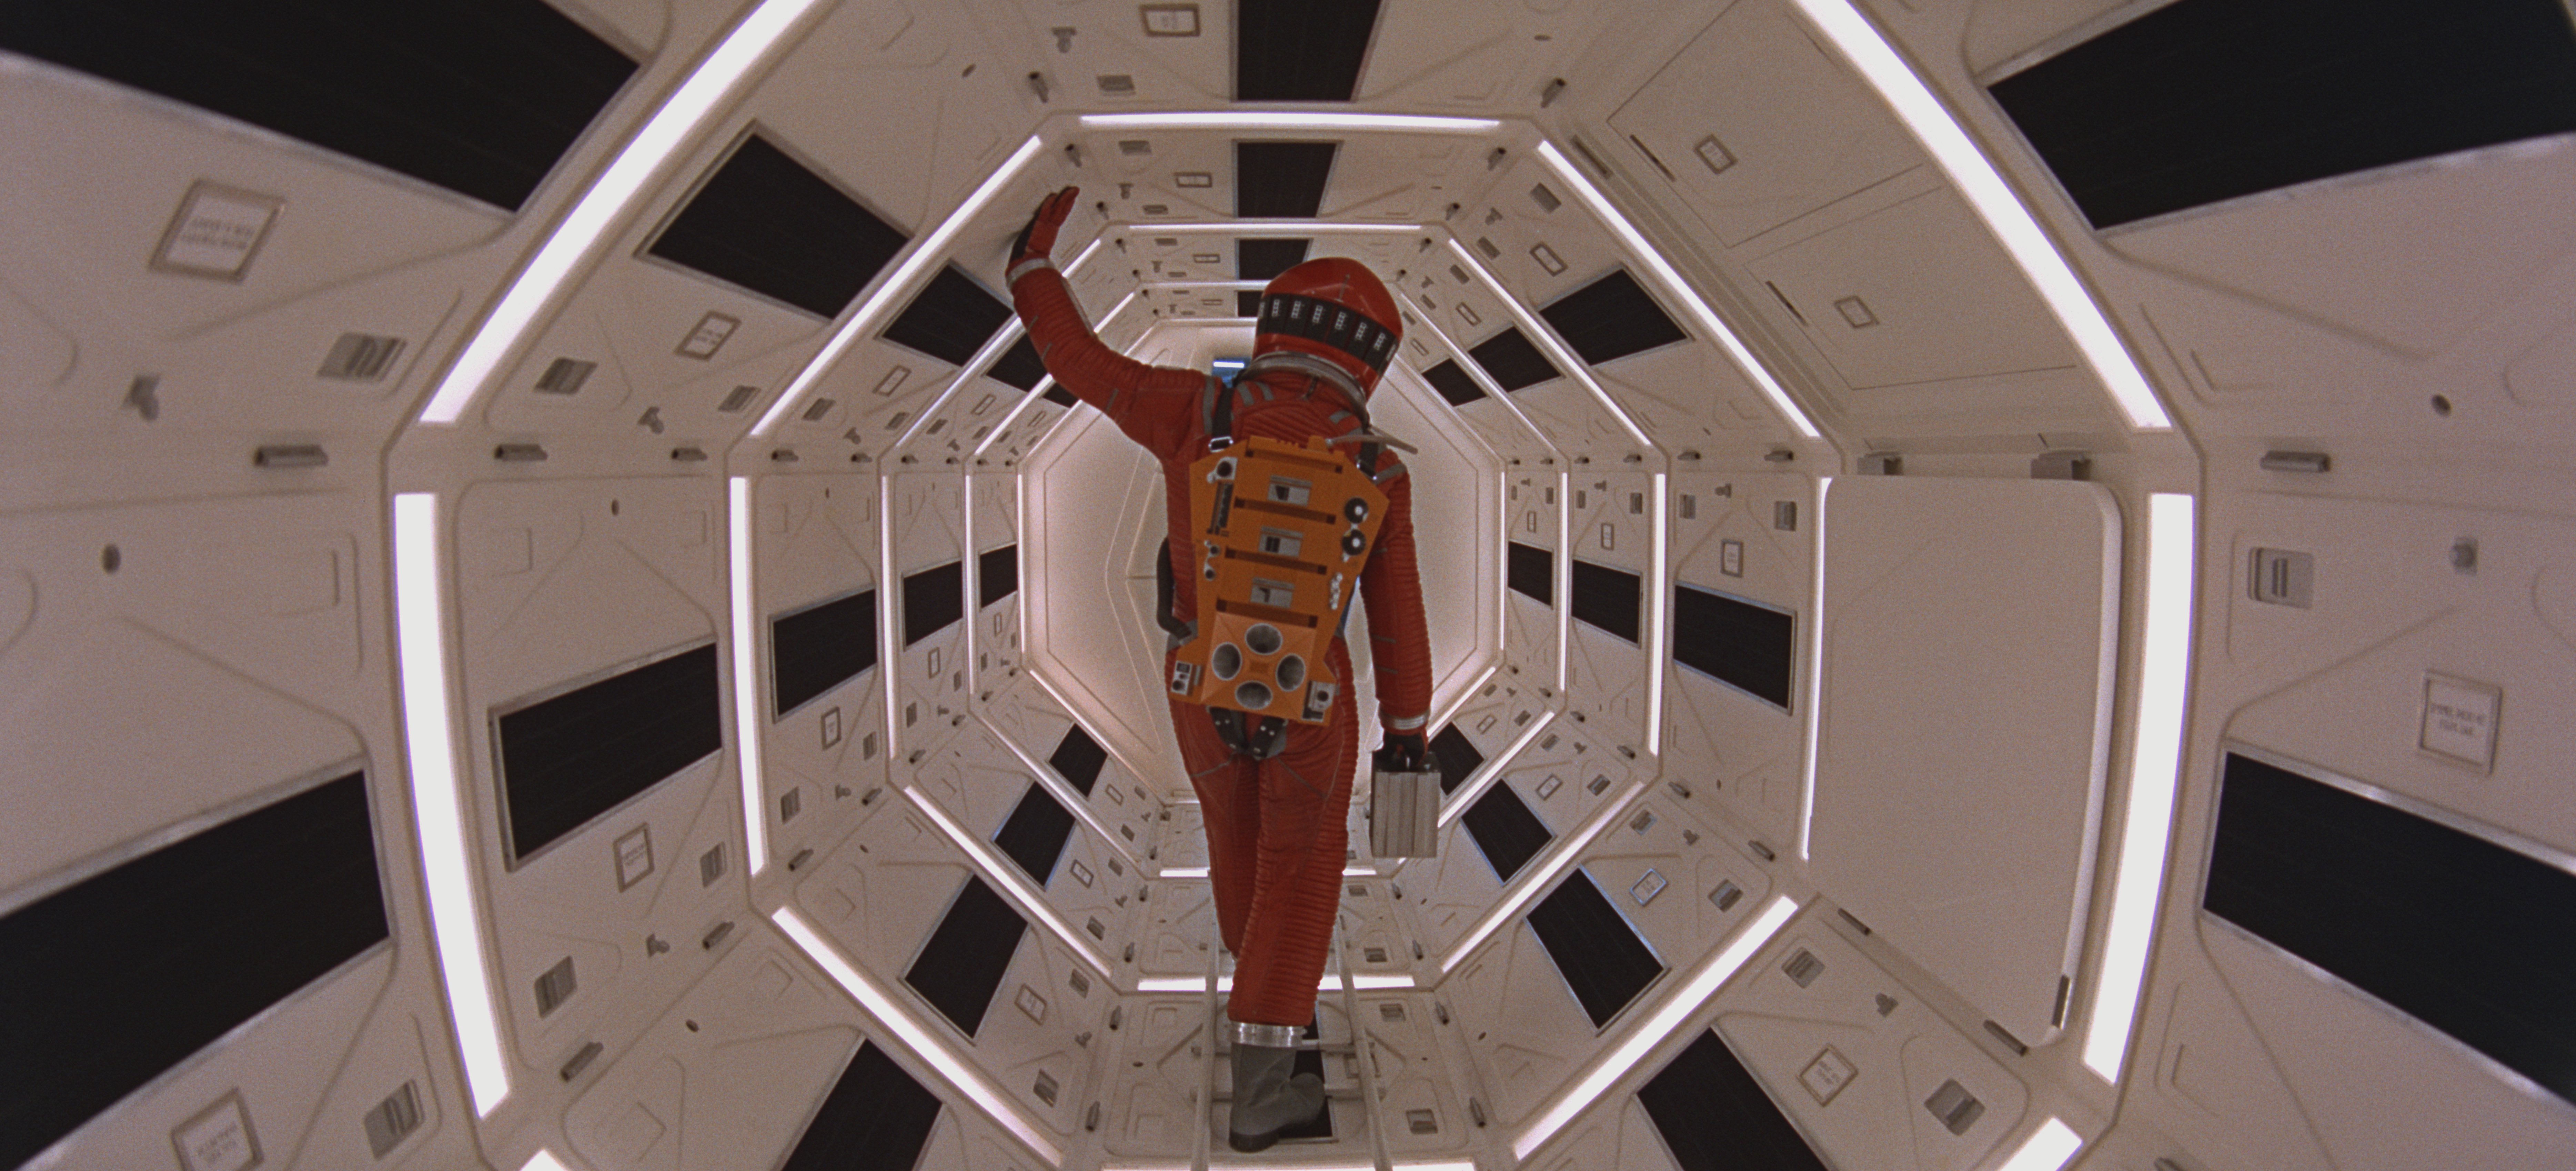 9. Космическая одиссея 2001 года 2001: A Space Odyssey (1968), оператор Джеффри Ансуорт, дополнительный оператор Джон Олкотт (режиссер Стэнли Кубрик)